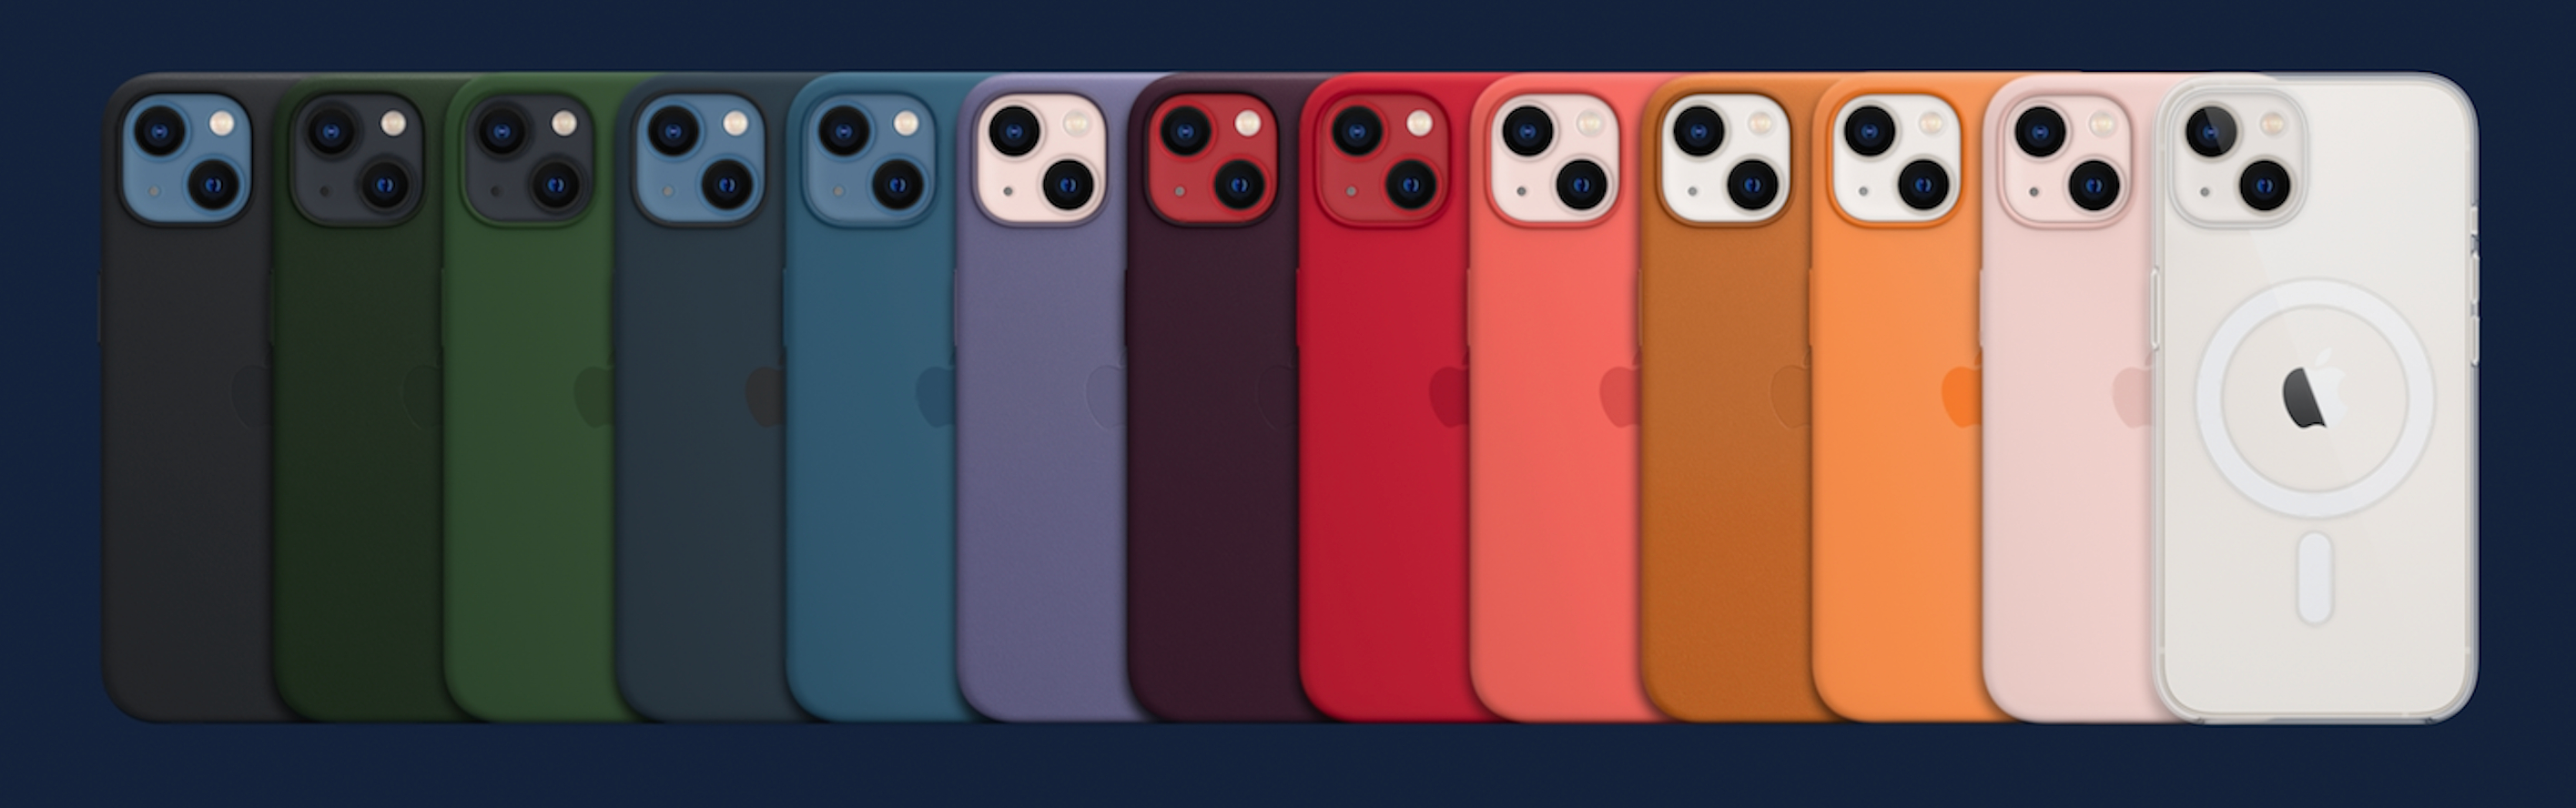 Чехол iphone 15 оригинал. Apple Silicon Case iphone 13 Mini. Apple iphone 13 Pro чехол. Apple Silicon Case iphone 13 Pro Max. Чехол Эппл оригинальный айфон 13.